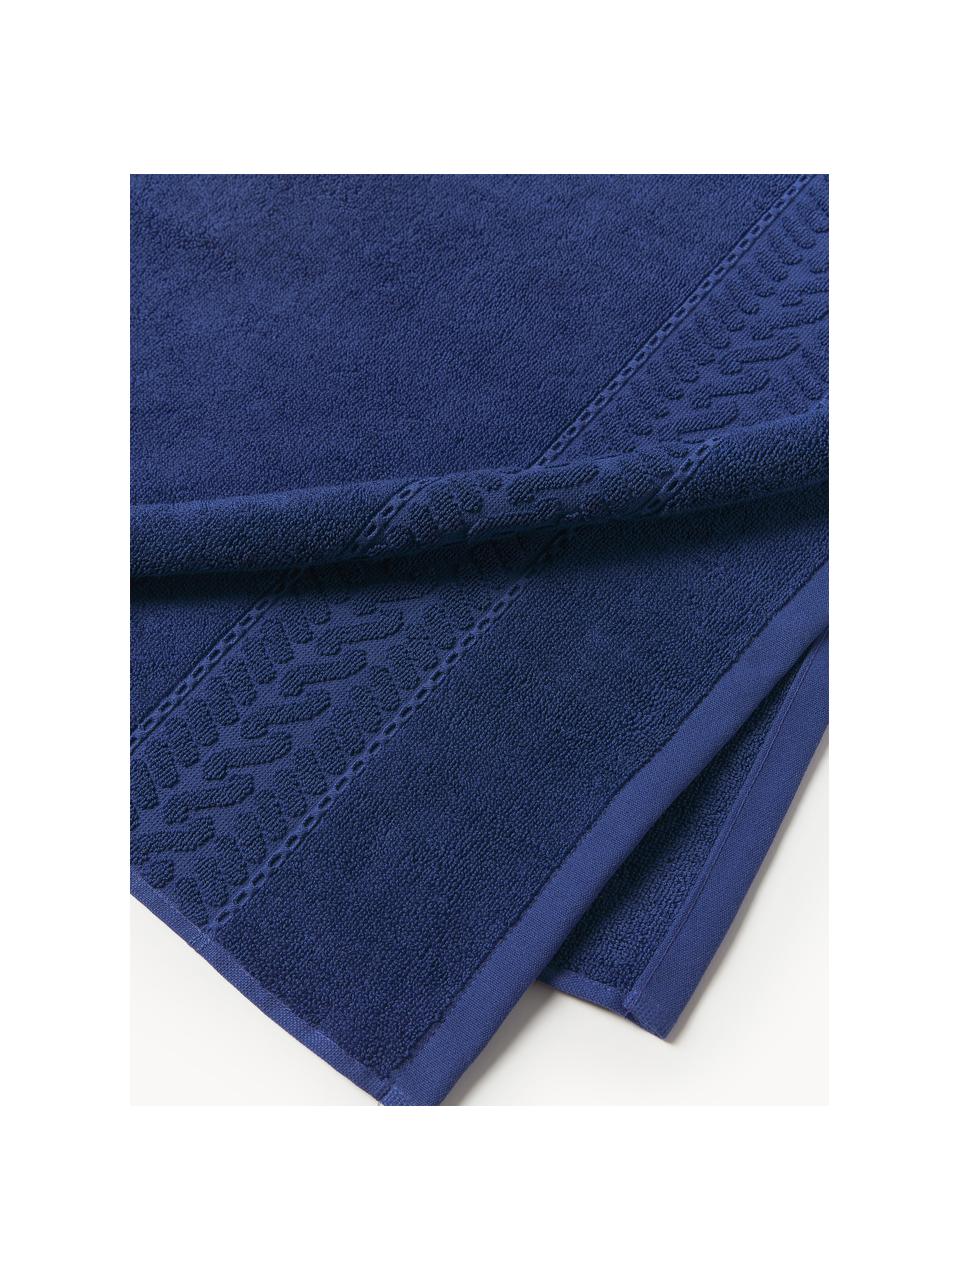 Ręcznik Cordelia, różne rozmiary, Ciemny niebieski, Ręcznik kąpielowy, S 70 x D 140 cm